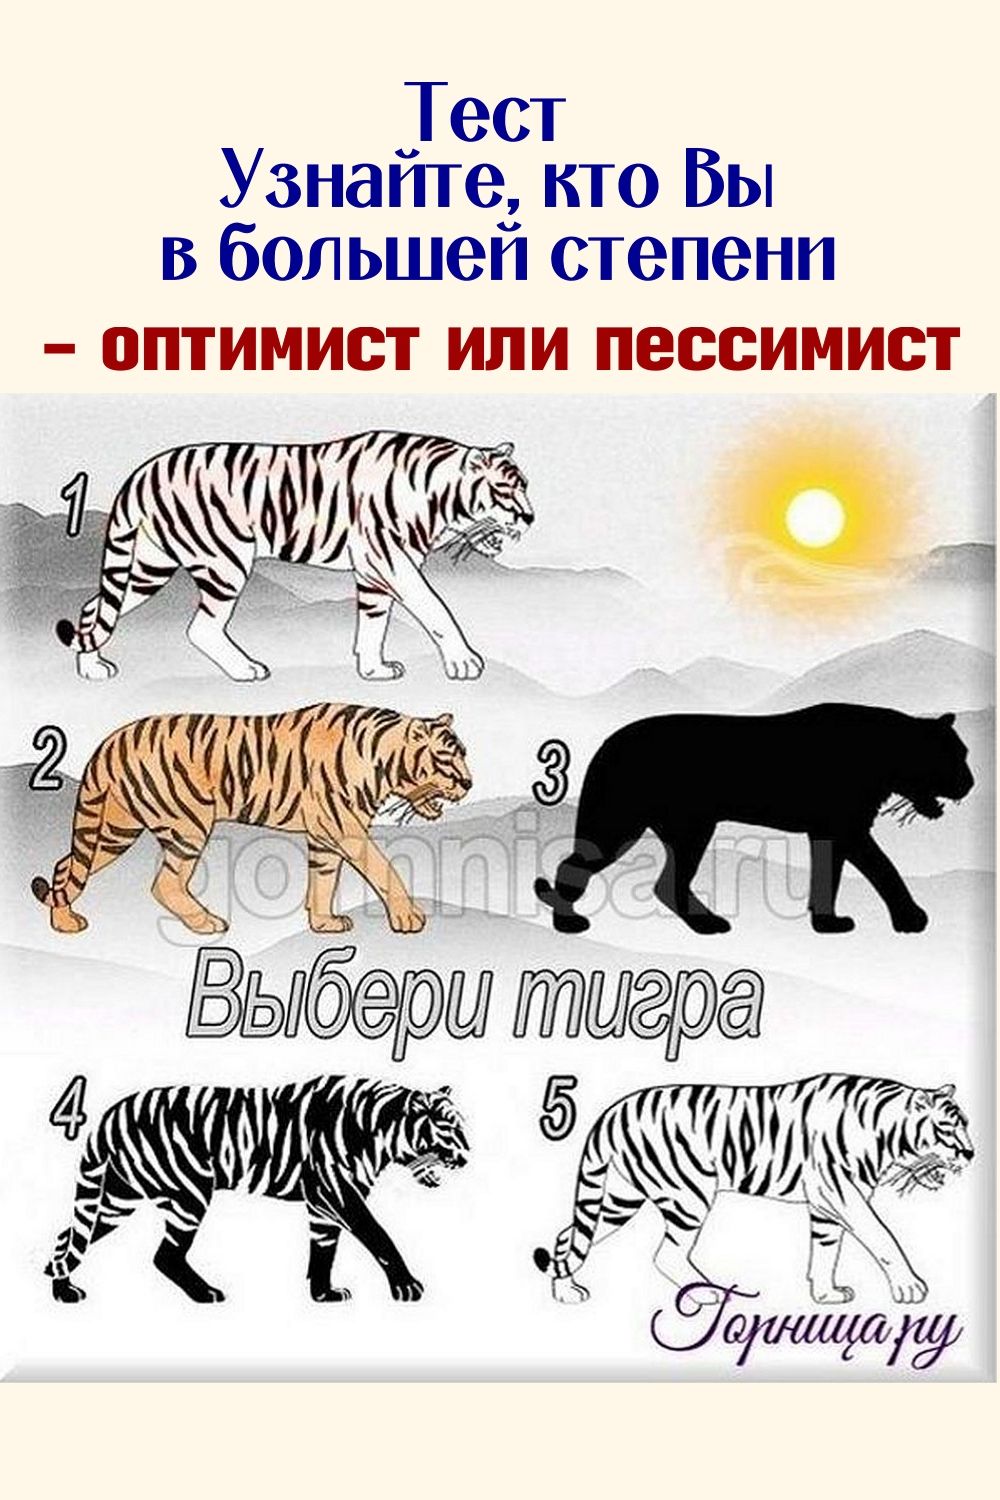 Тест тигр